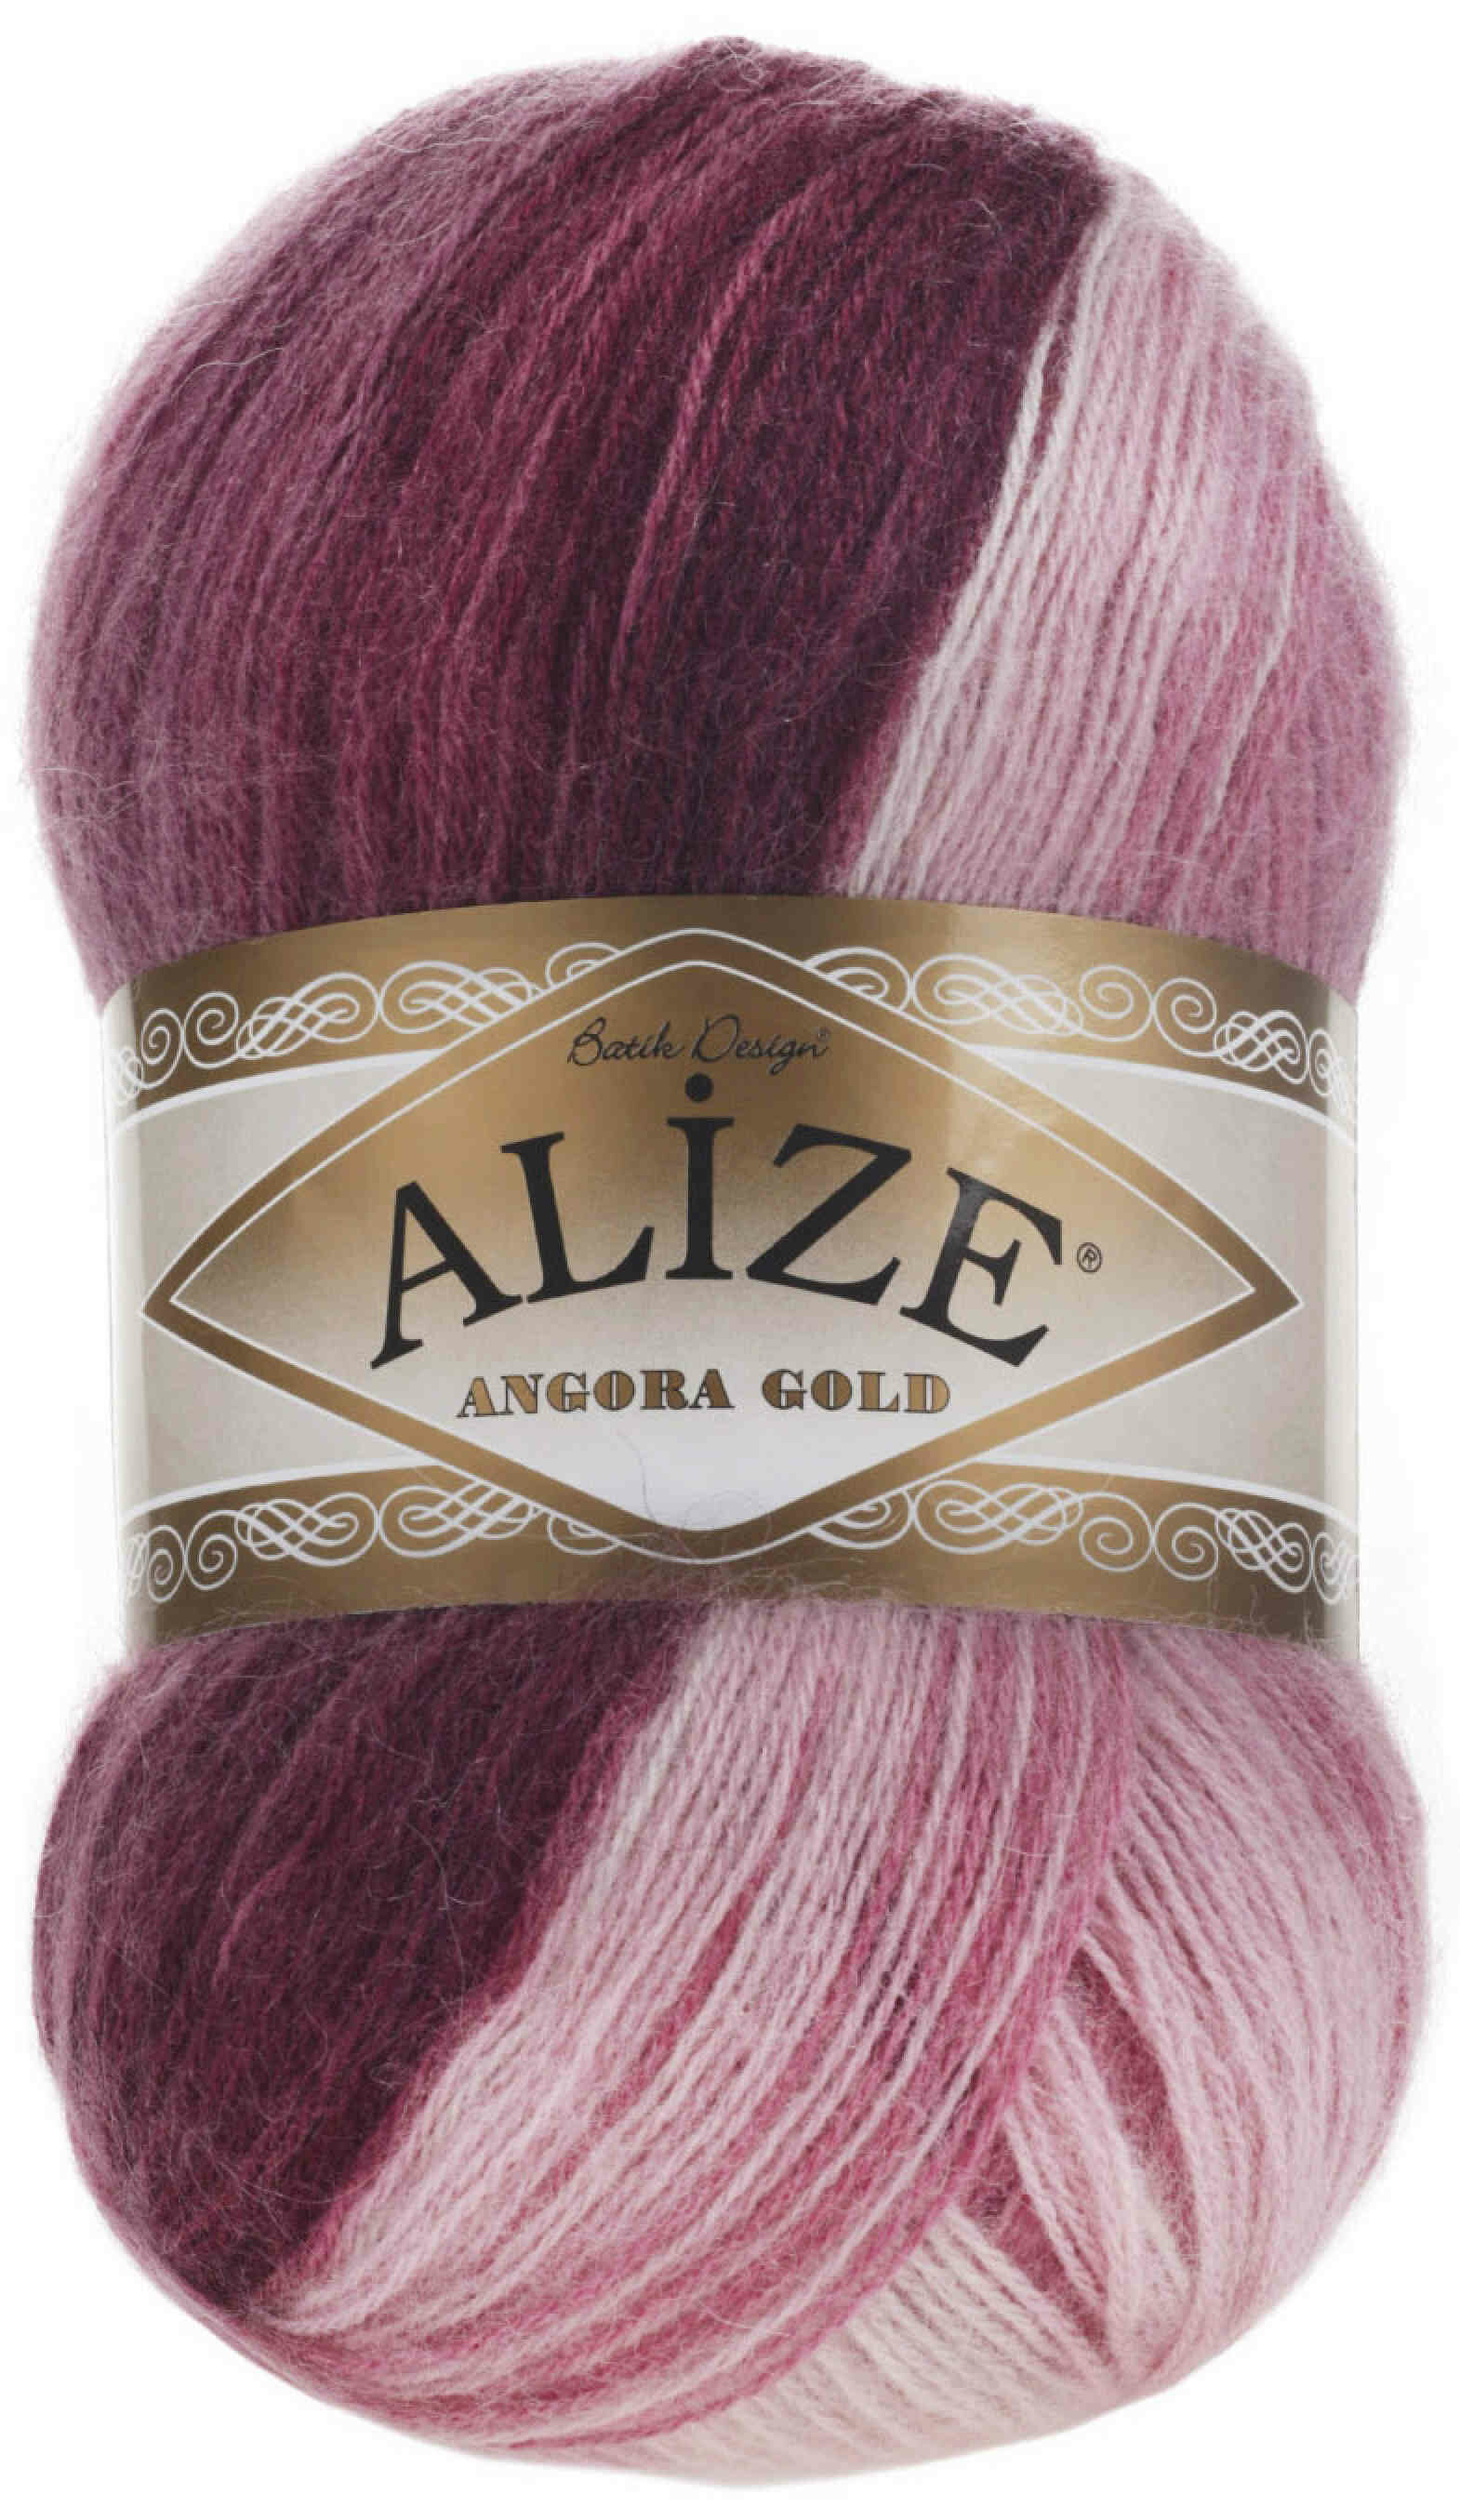 Пряжа Alize Angora Gold Batik розово-лилово-бордовый (1895), 80%акрил/20%шерсть, 550м, 100г, 1шт